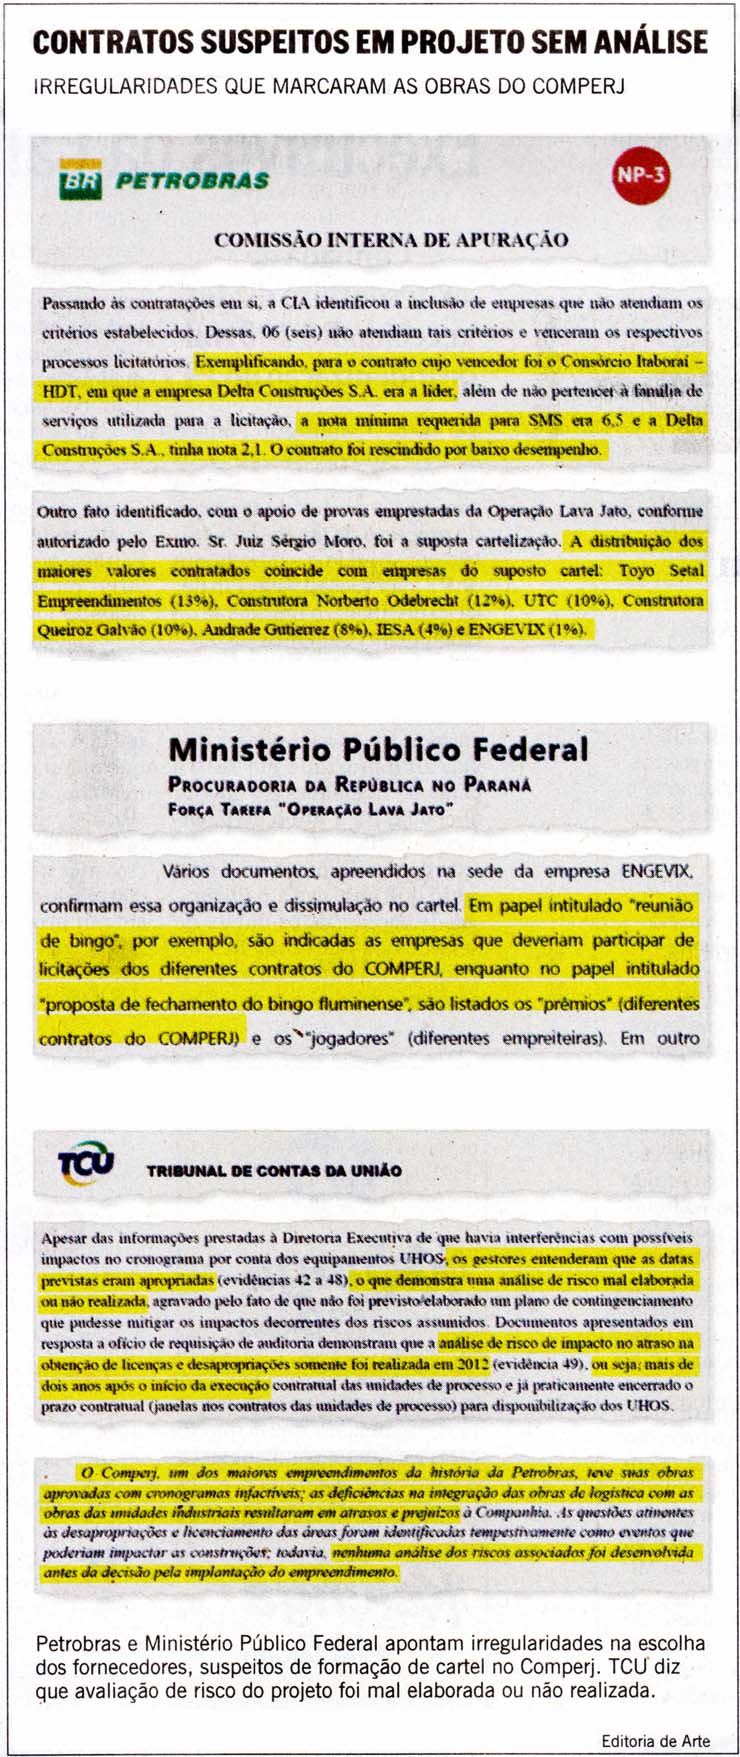 O Globo - 21/04/15 - PETROLO: COMPERJ inmeras irregularidades